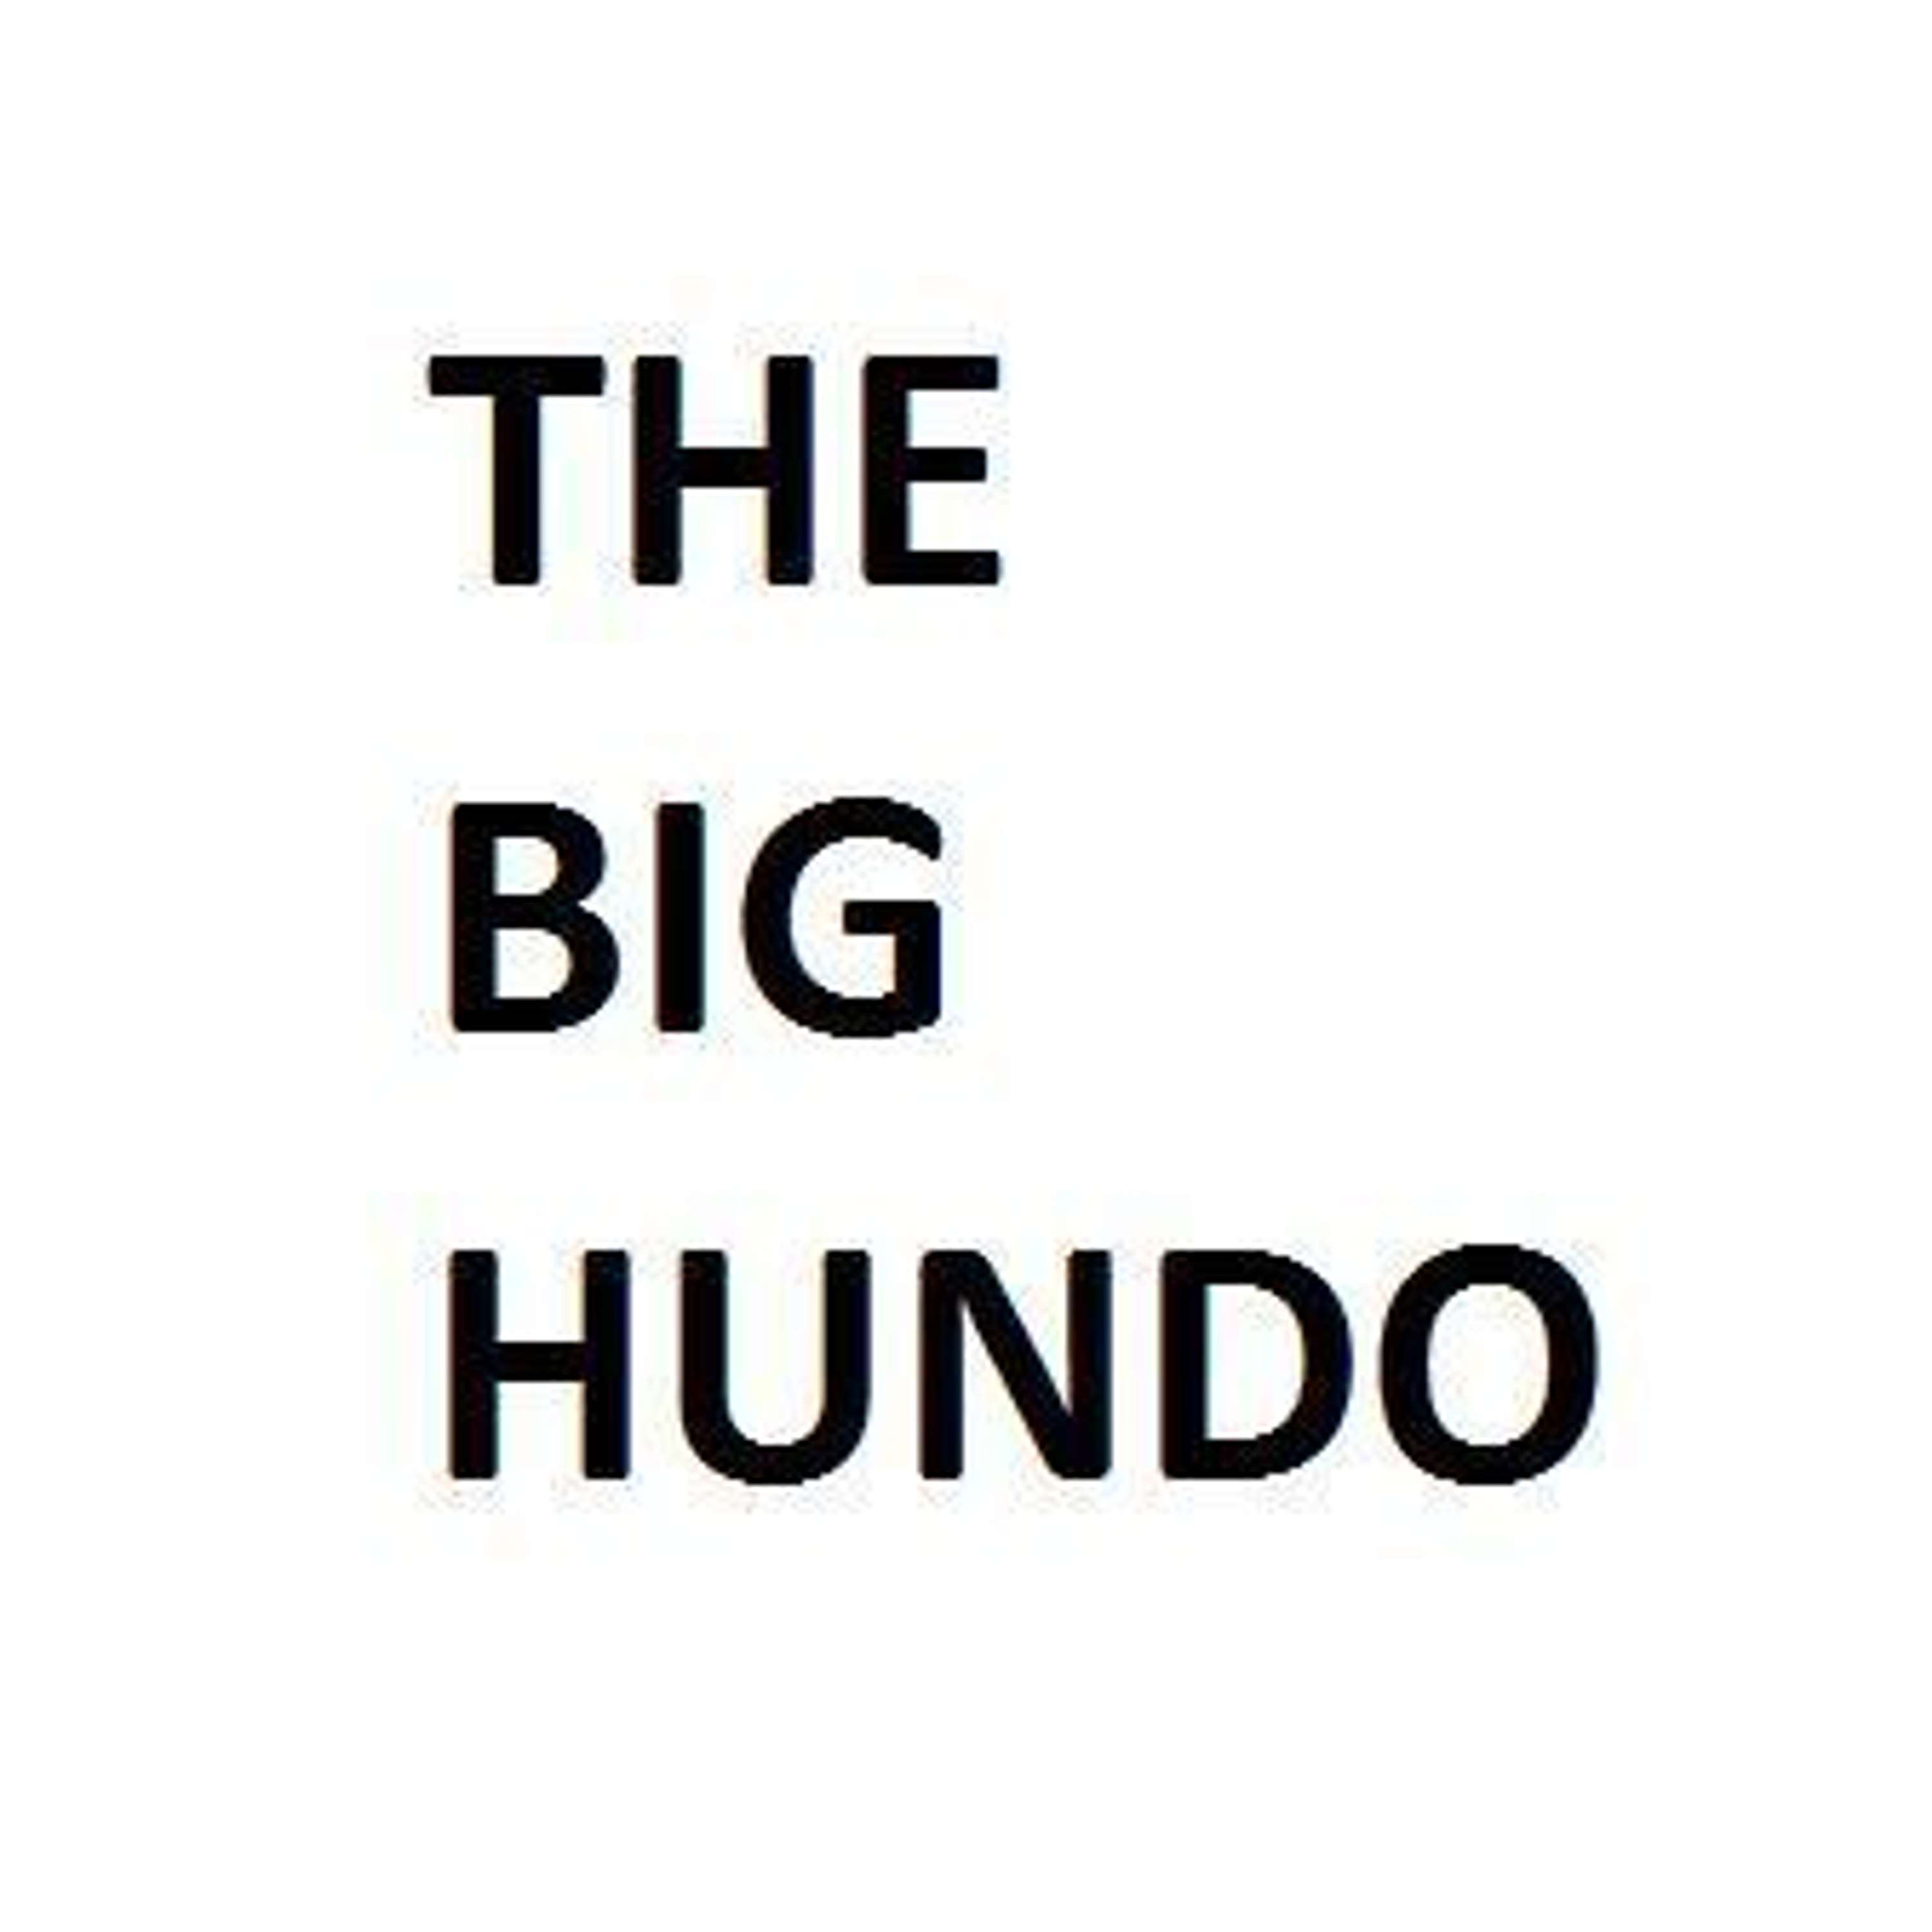 Ep 100 - The Big Hundo